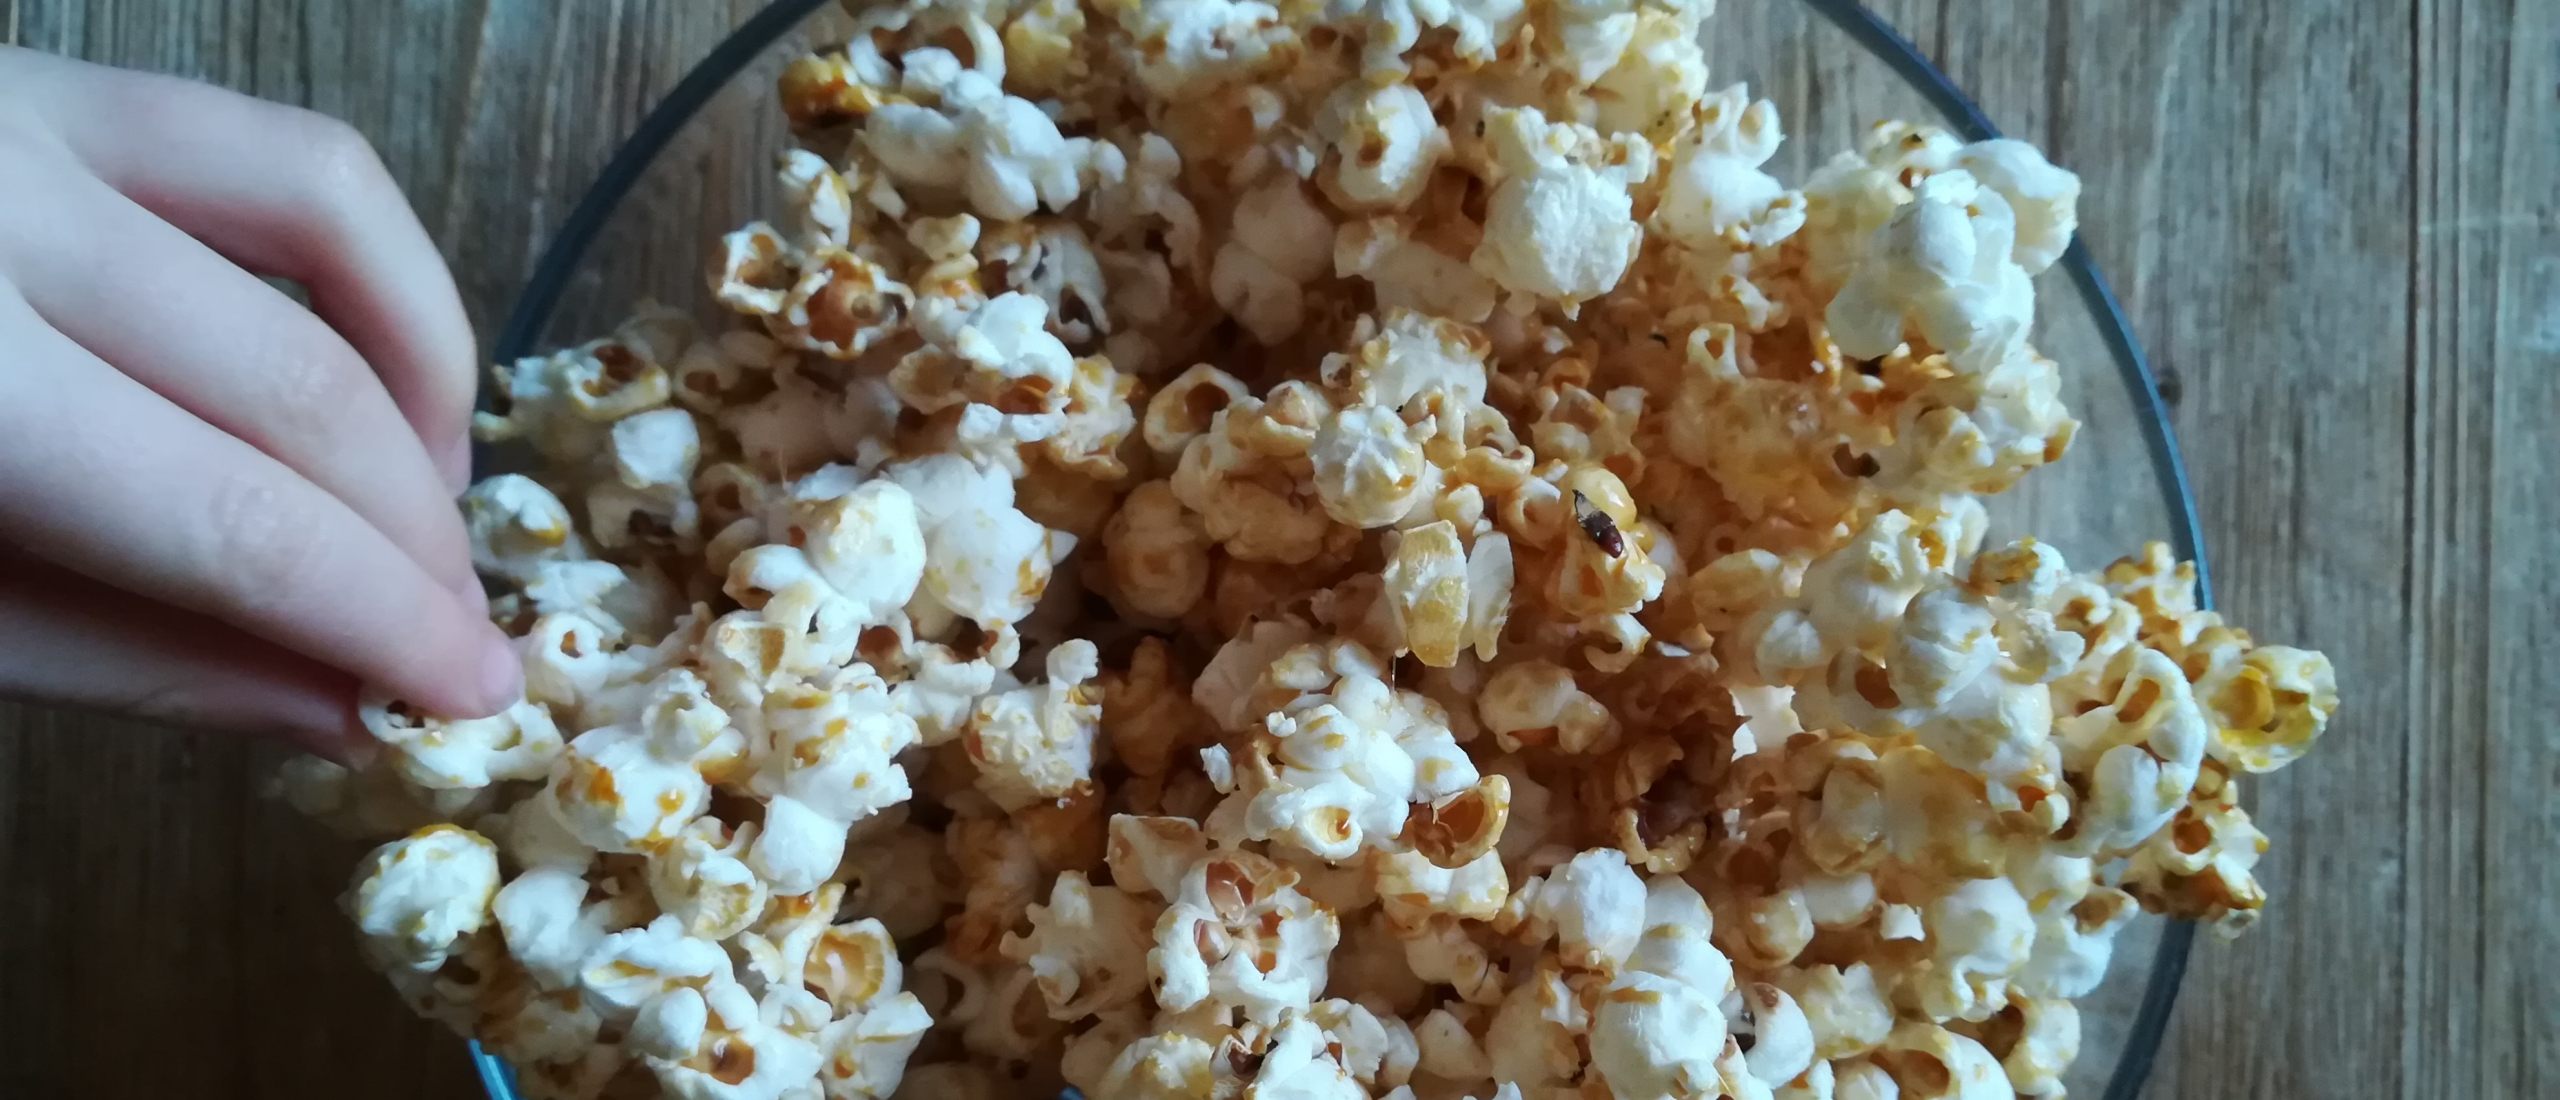 Zelf gemakkelijk zoete en popcorn maken - Helden Academie